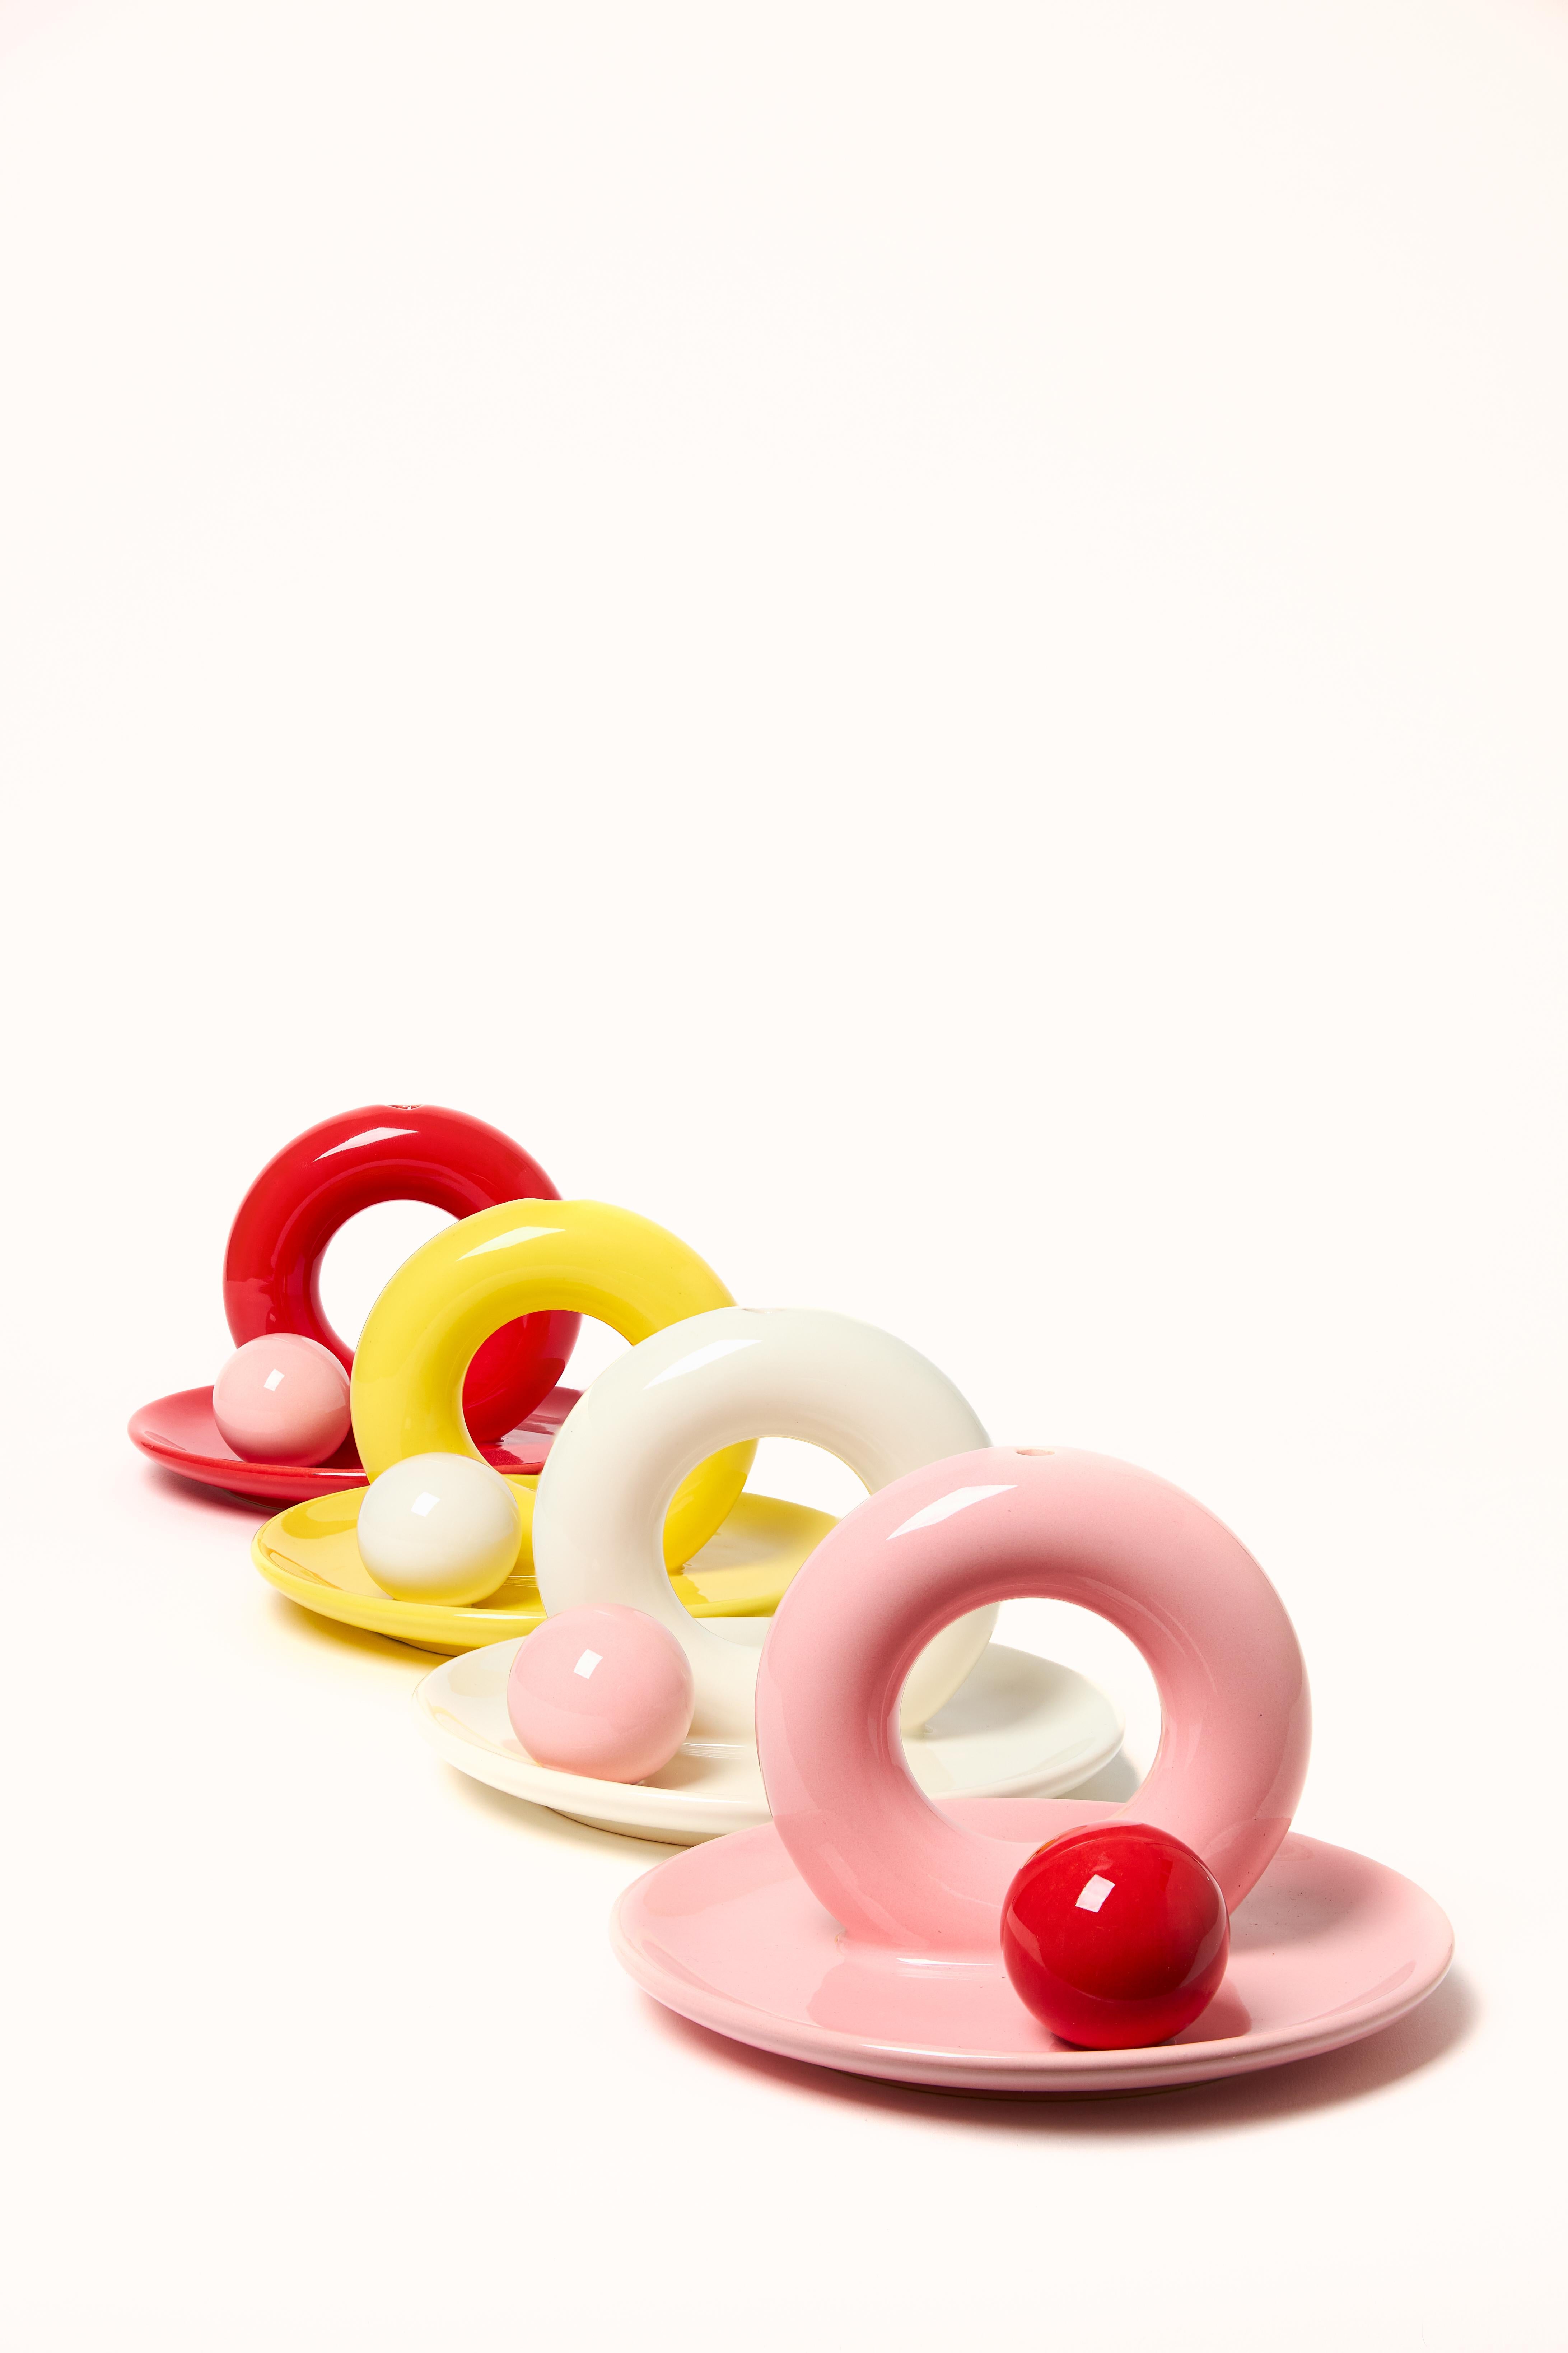 Keramik
ecrufarbene Glasur
rosa Ball
ø 15 cm

Aniela MINI ist die Antwort auf das Bedürfnis nach einem kleinen Gegenstand - ein Untersetzer, auf dem man Schmuck, Süßigkeiten oder Räucherstäbchen abstellen kann.